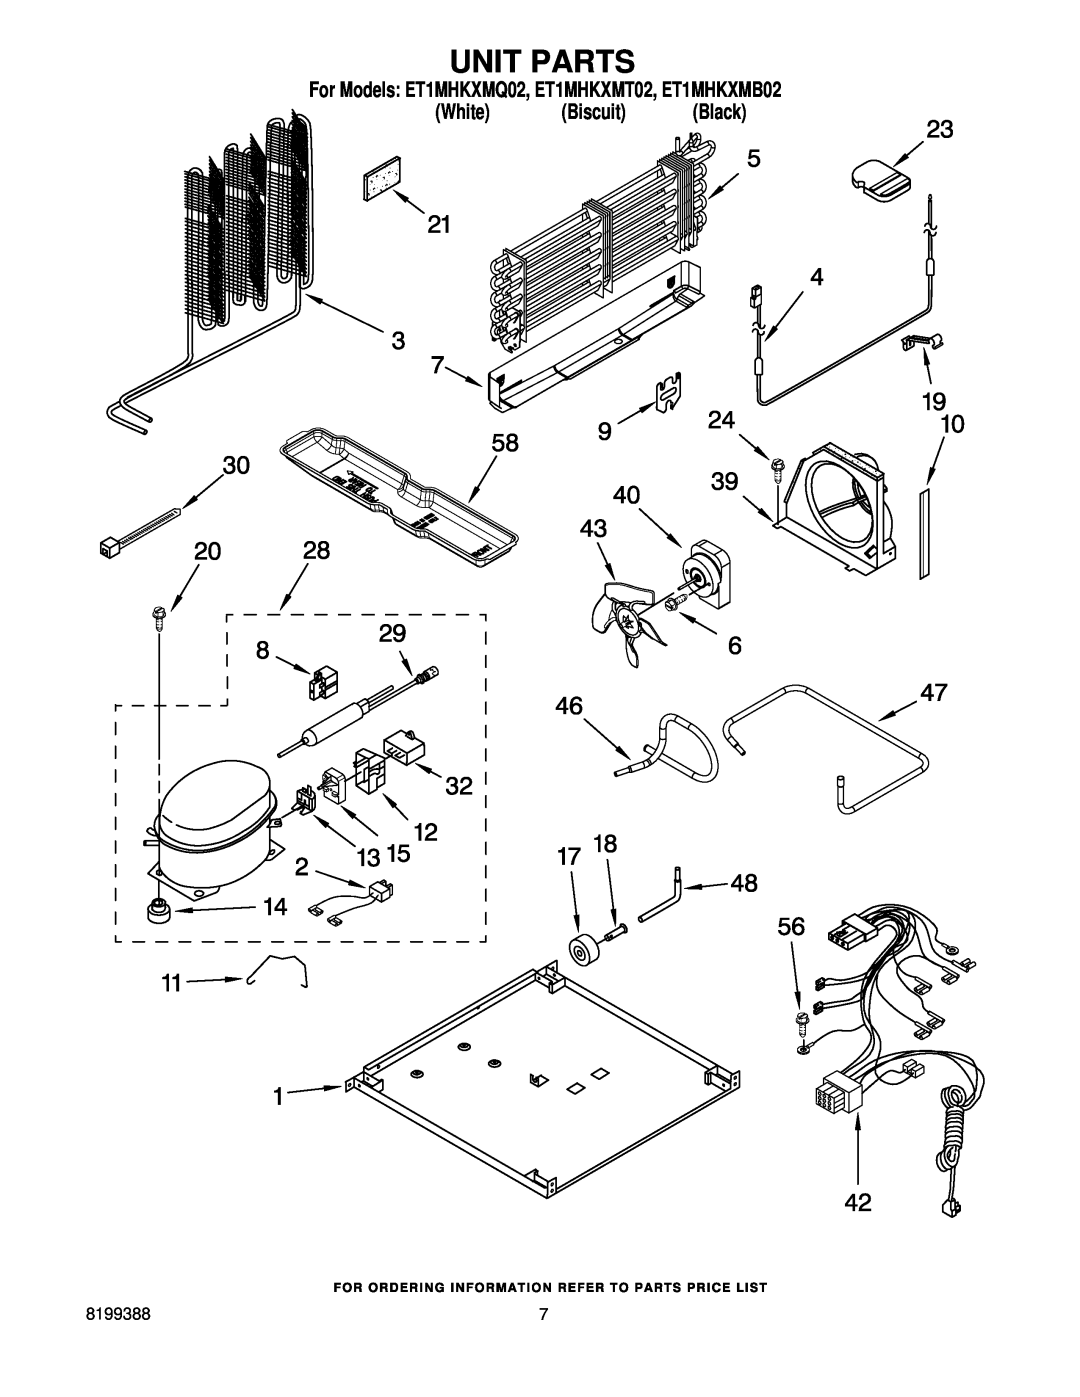 Whirlpool manual Unit Parts, For Models ET1MHKXMQ02, ET1MHKXMT02, ET1MHKXMB02 White Biscuit Black 